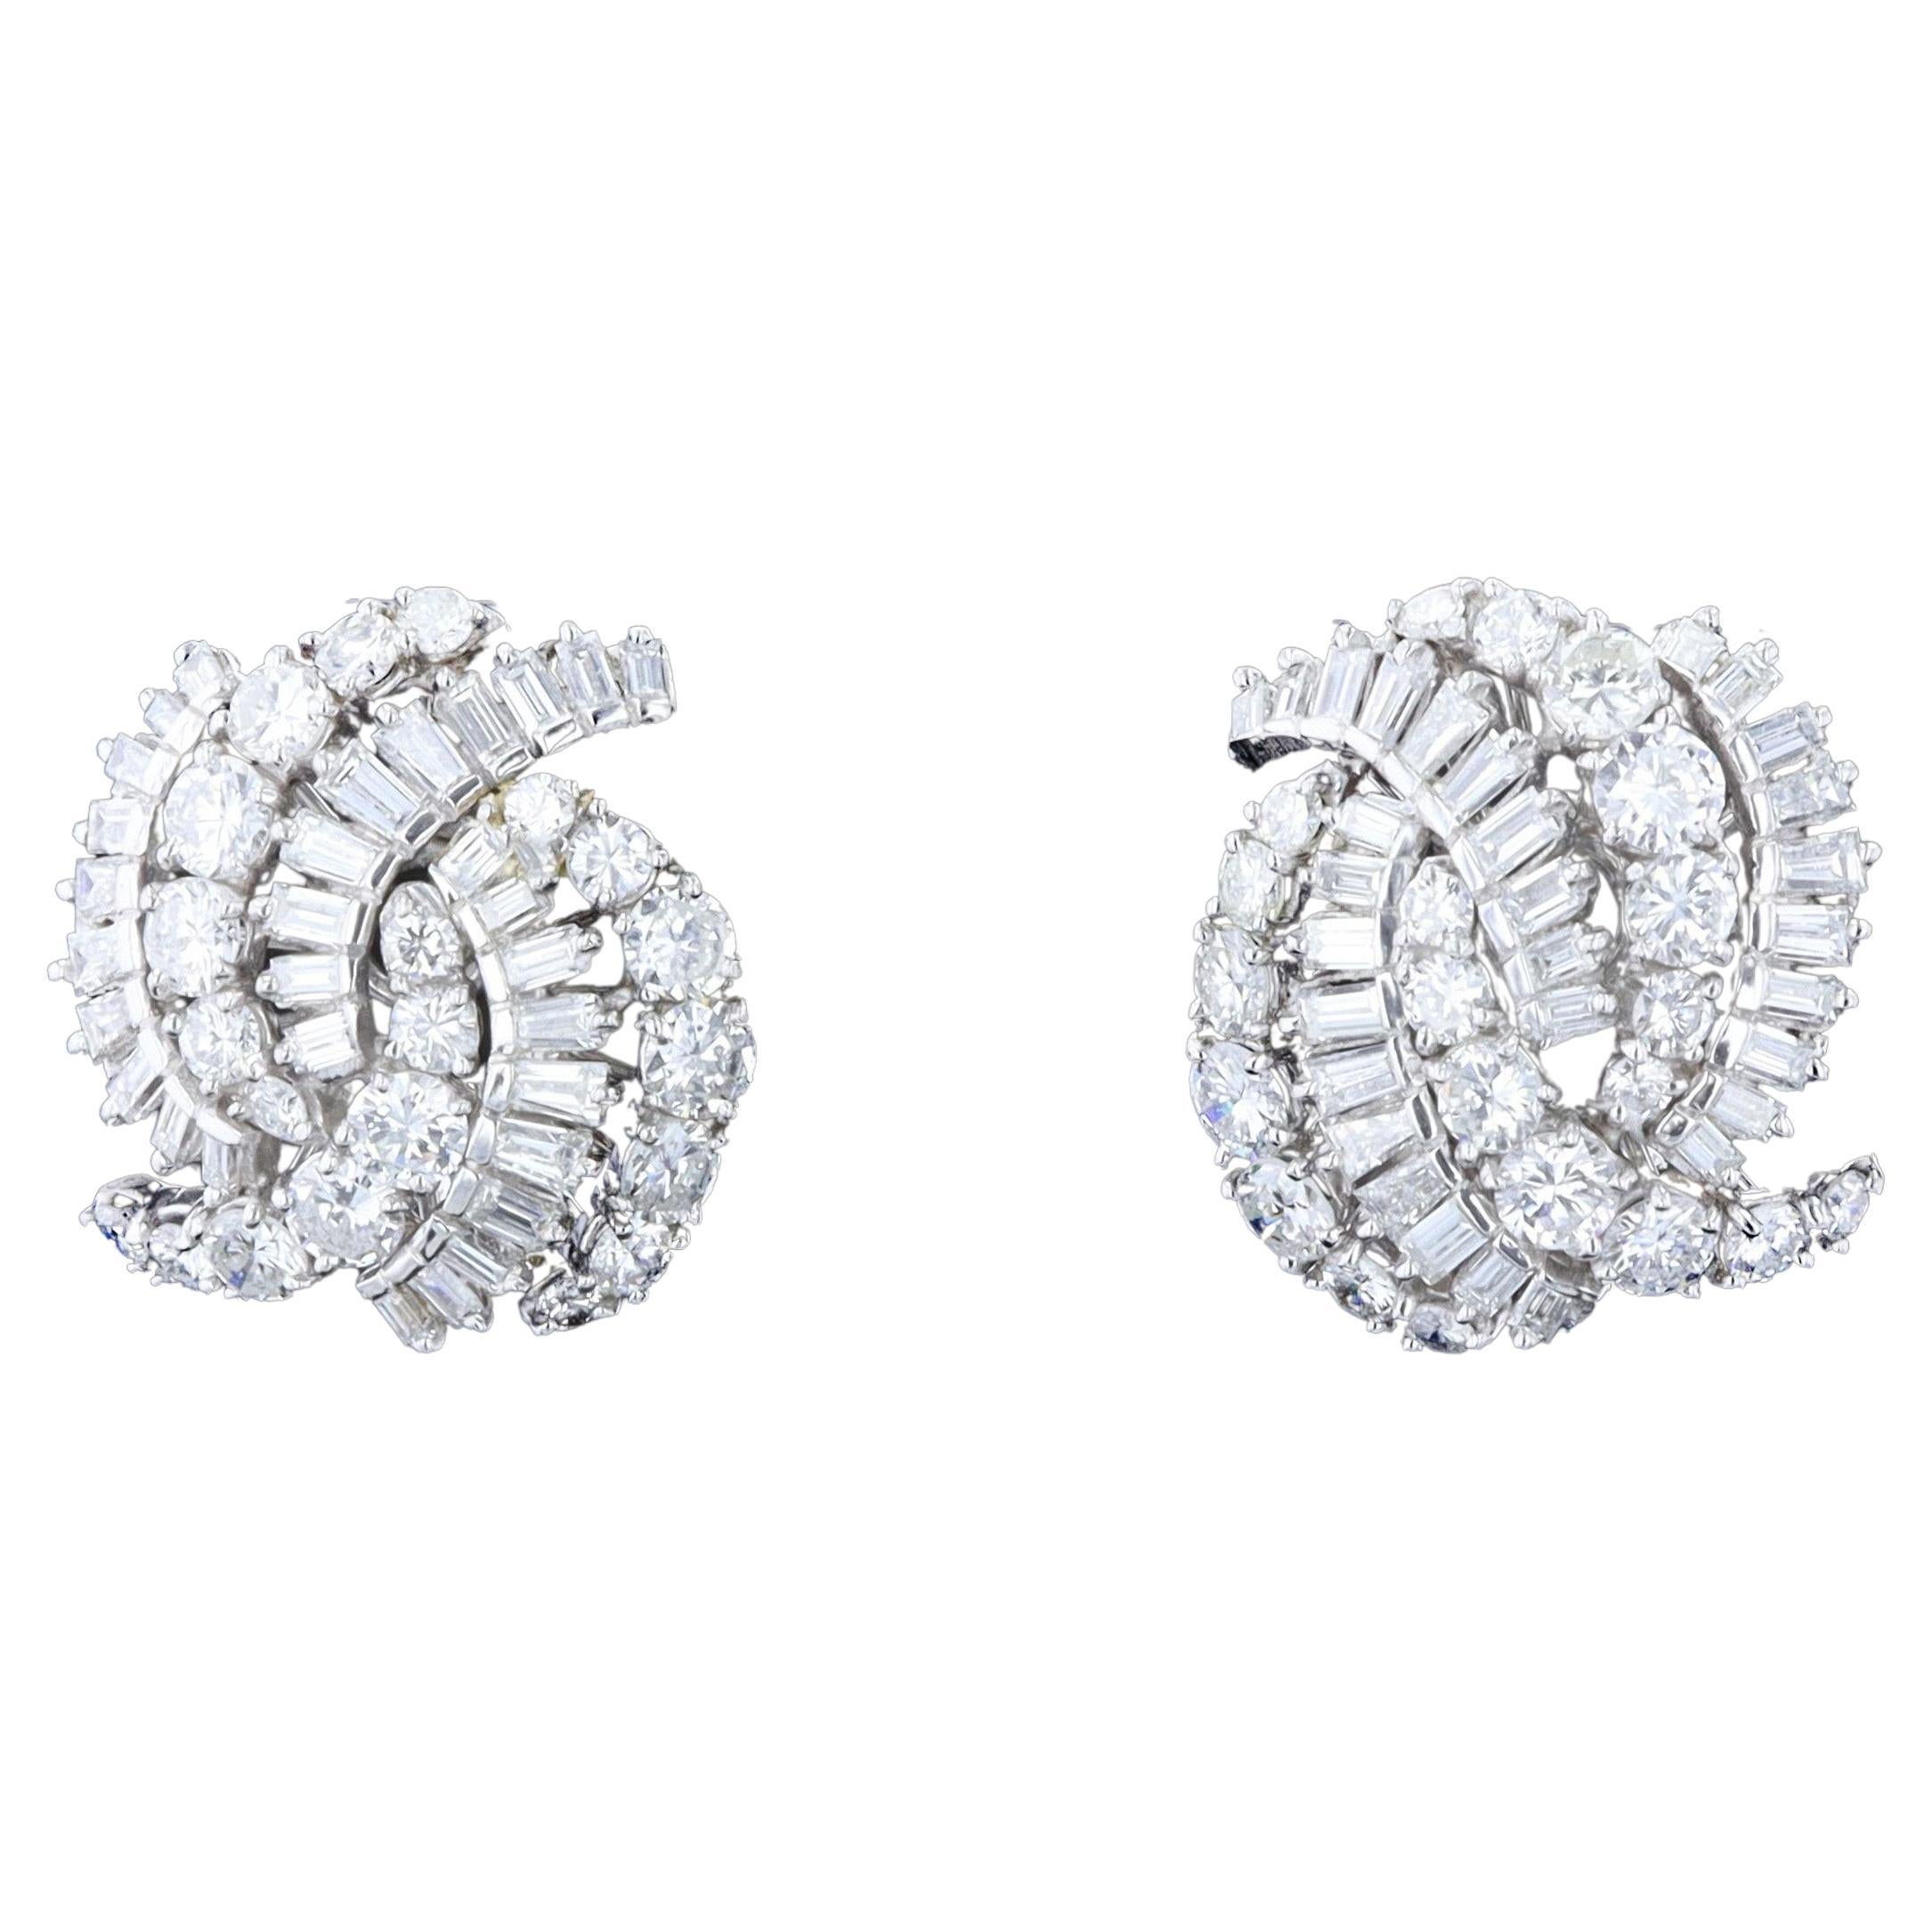 Sparkling Diamond Estate Earrings